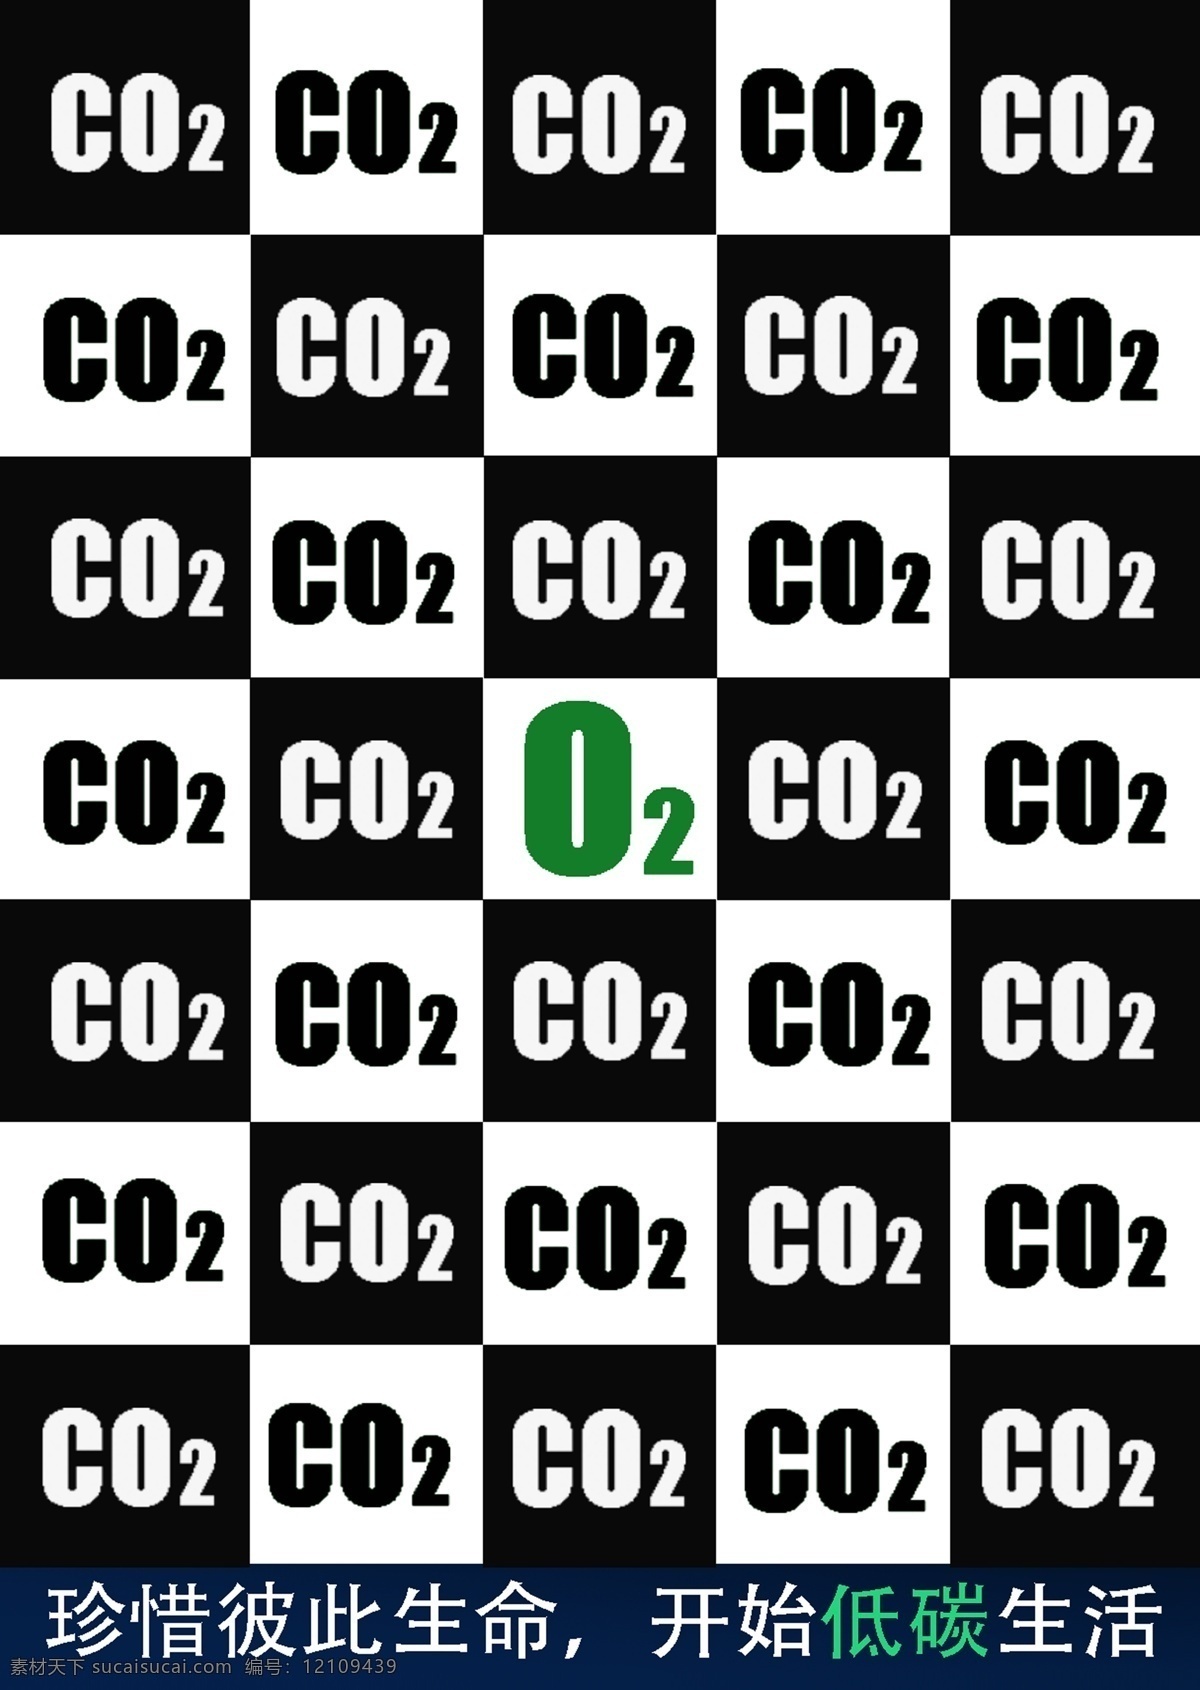 低碳 公益 公益海报 海报 模板下载 广告设计模板 生活 源文件 珍惜生命 co2 o2 环保公益海报